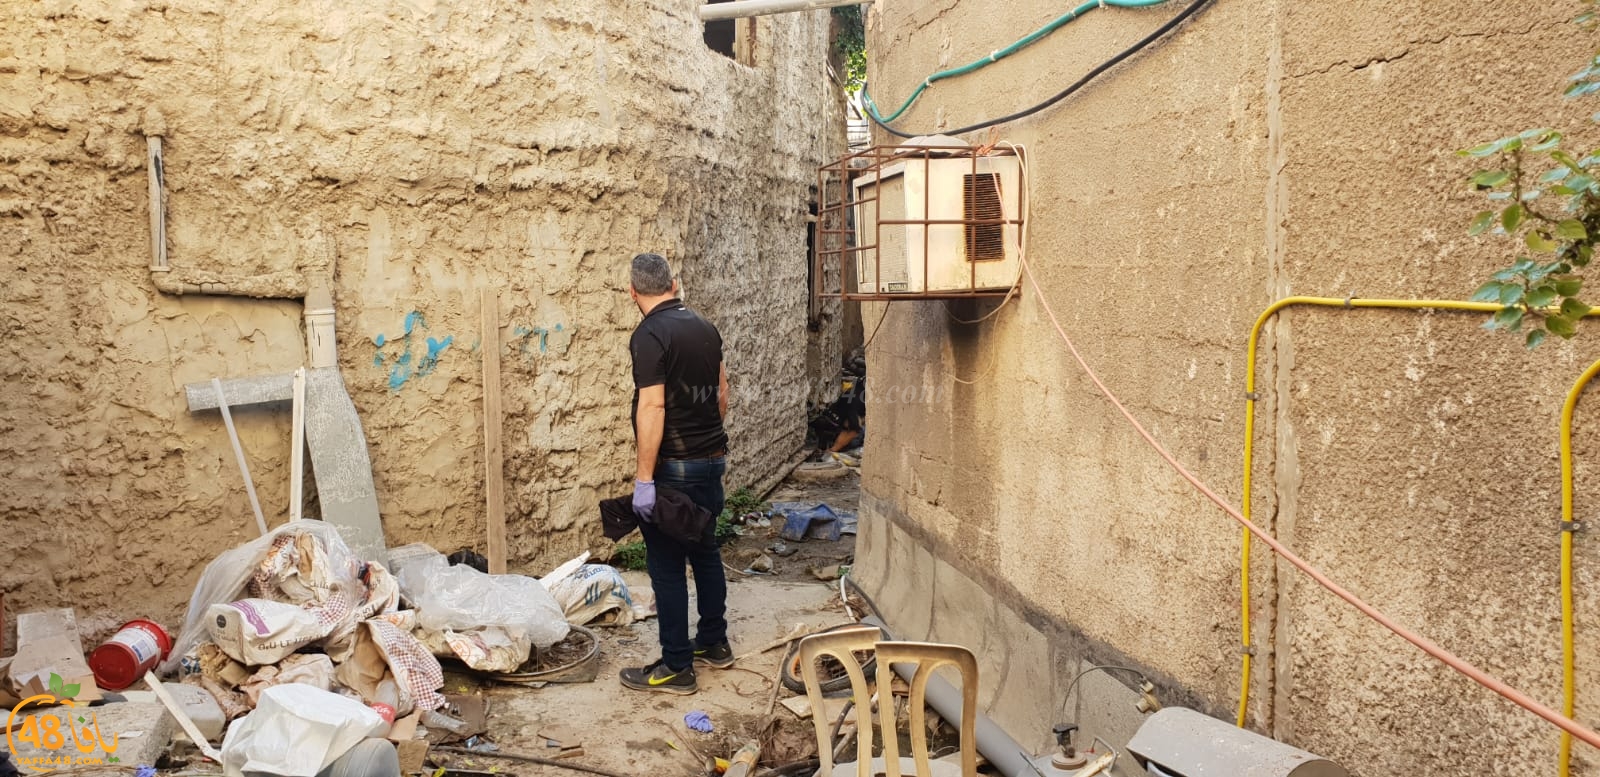  الشرطة: العثور على قطعة سلاح في مدينة يافا واعتقال مشتبه 